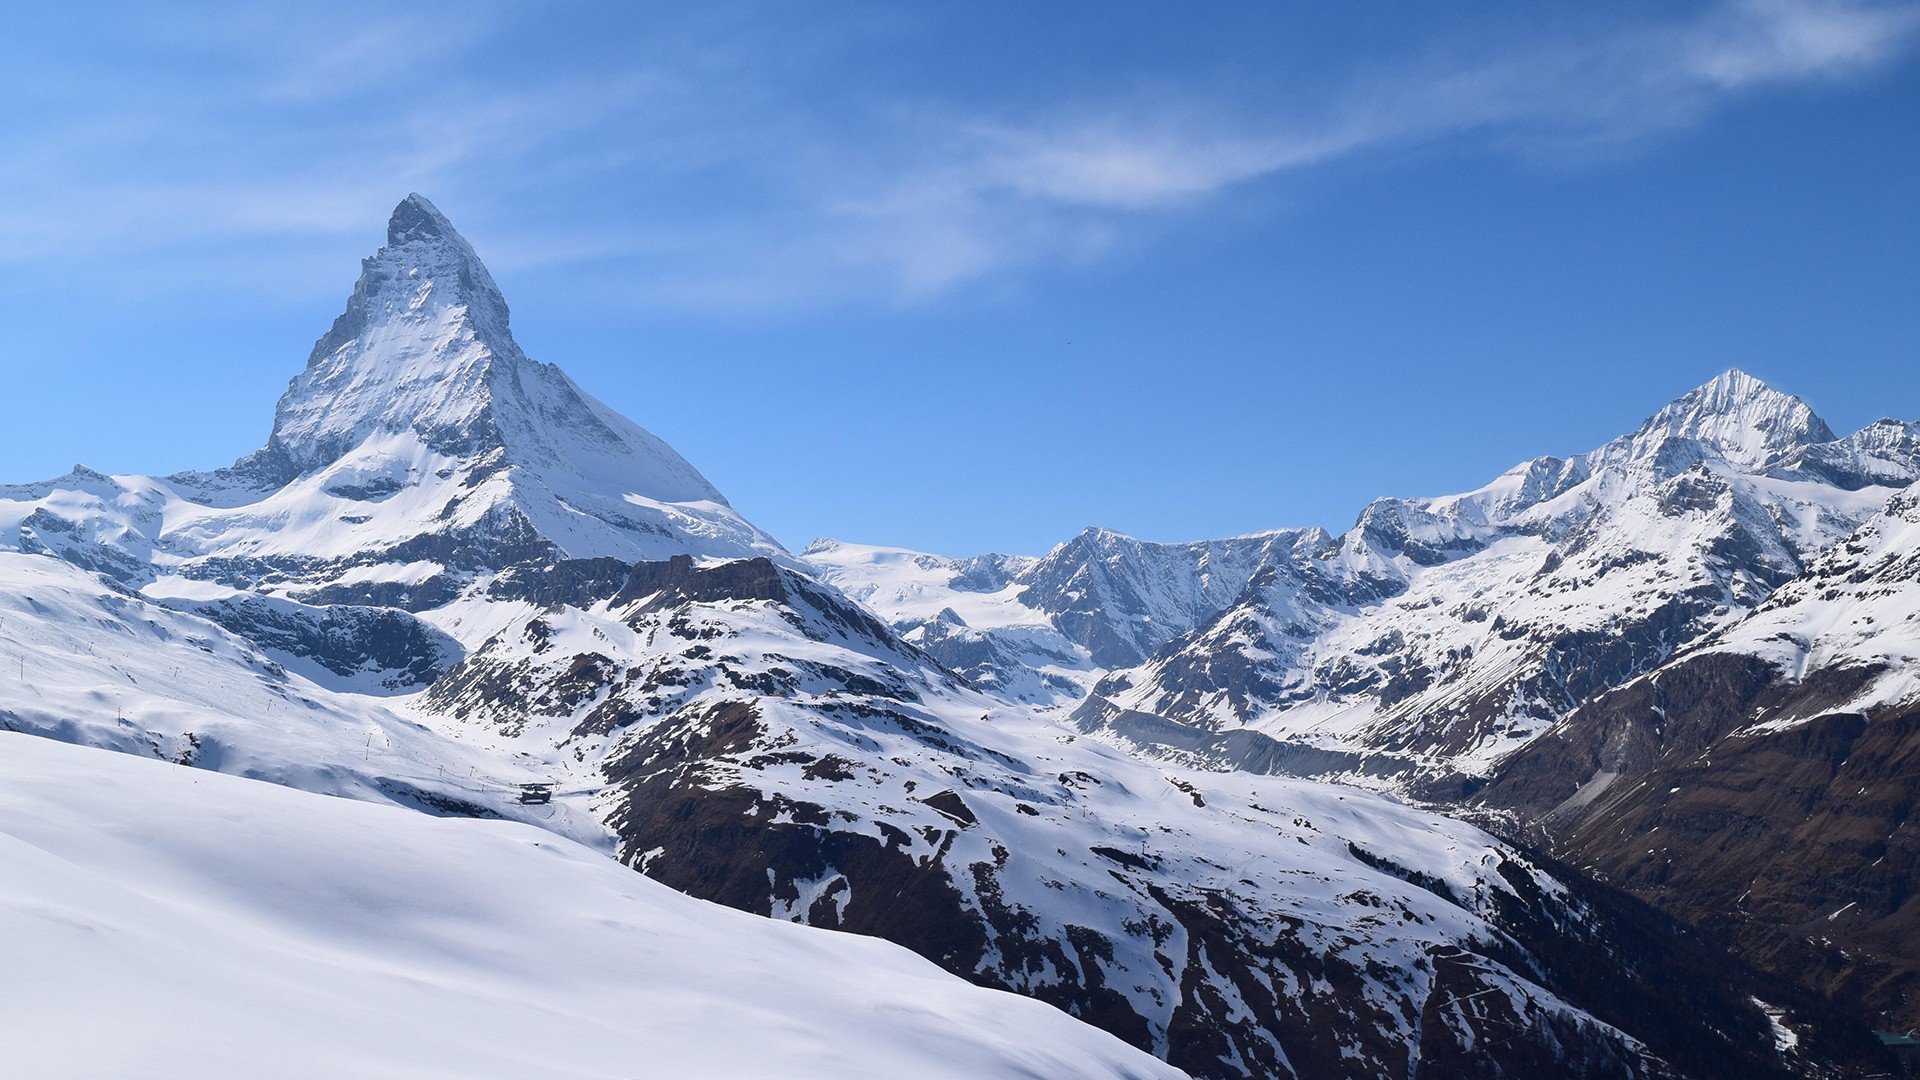 General 1920x1080 snow mountains Matterhorn